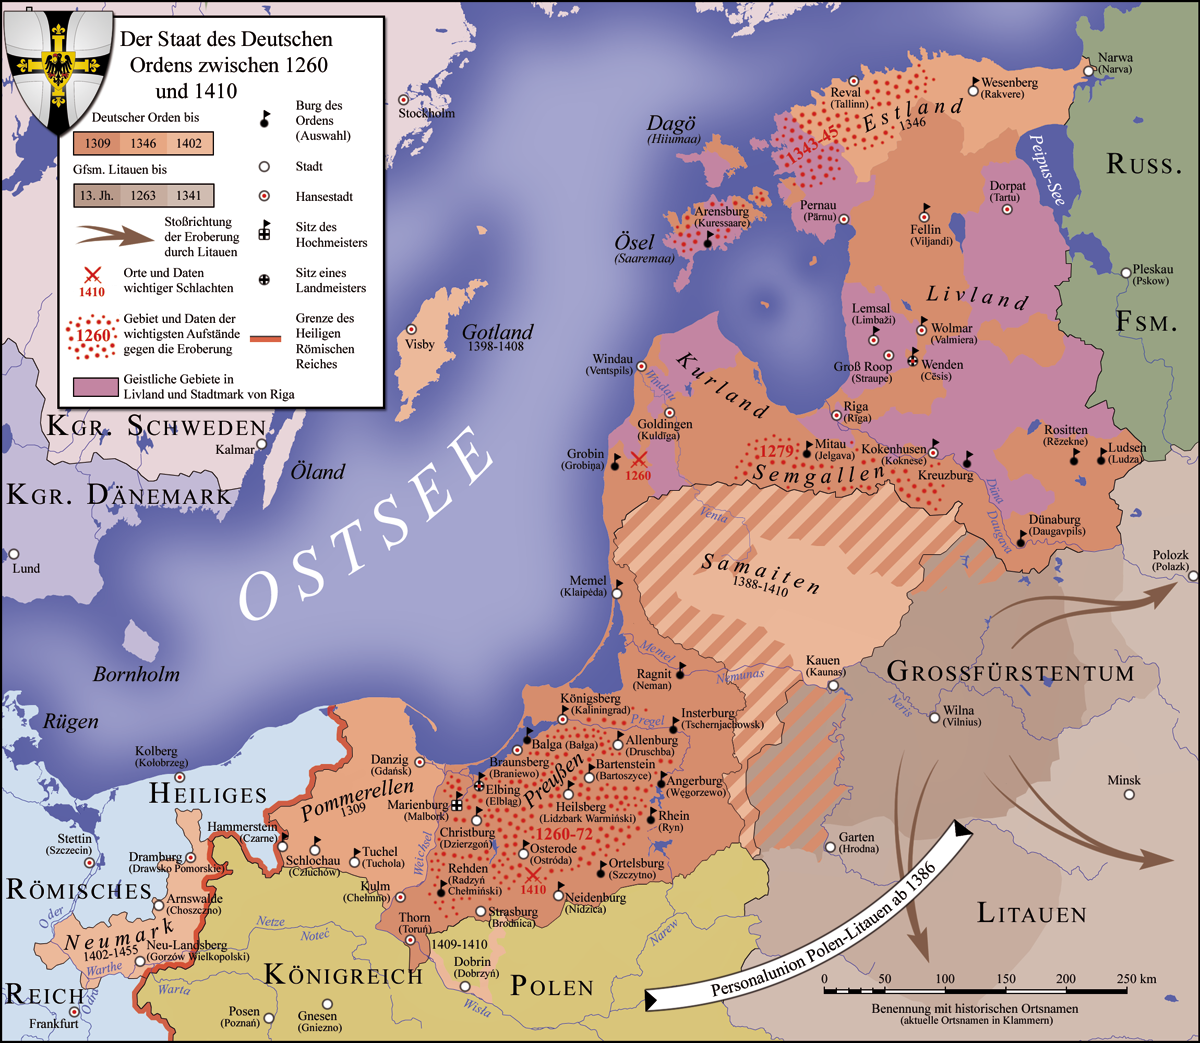 Das Bild zeigt eine Lankarte mit dem Titel: "Der Staat des Deutschen Ordens zwischen 1260 und 1410".